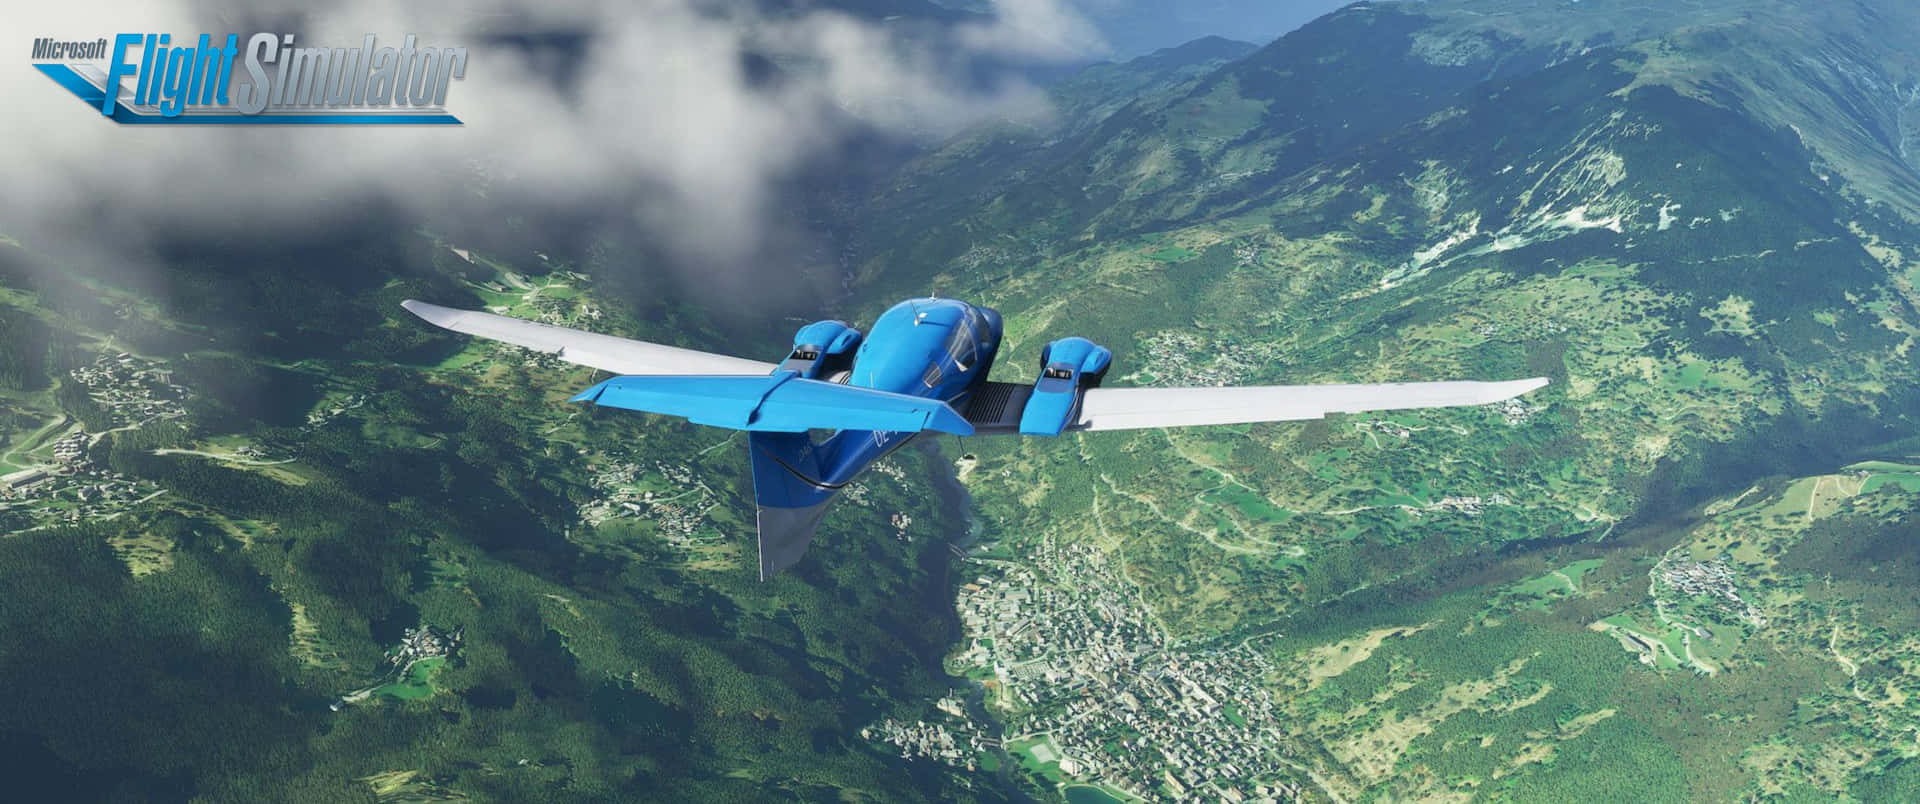 Surcalos Cielos Con El Microsoft Flight Simulator